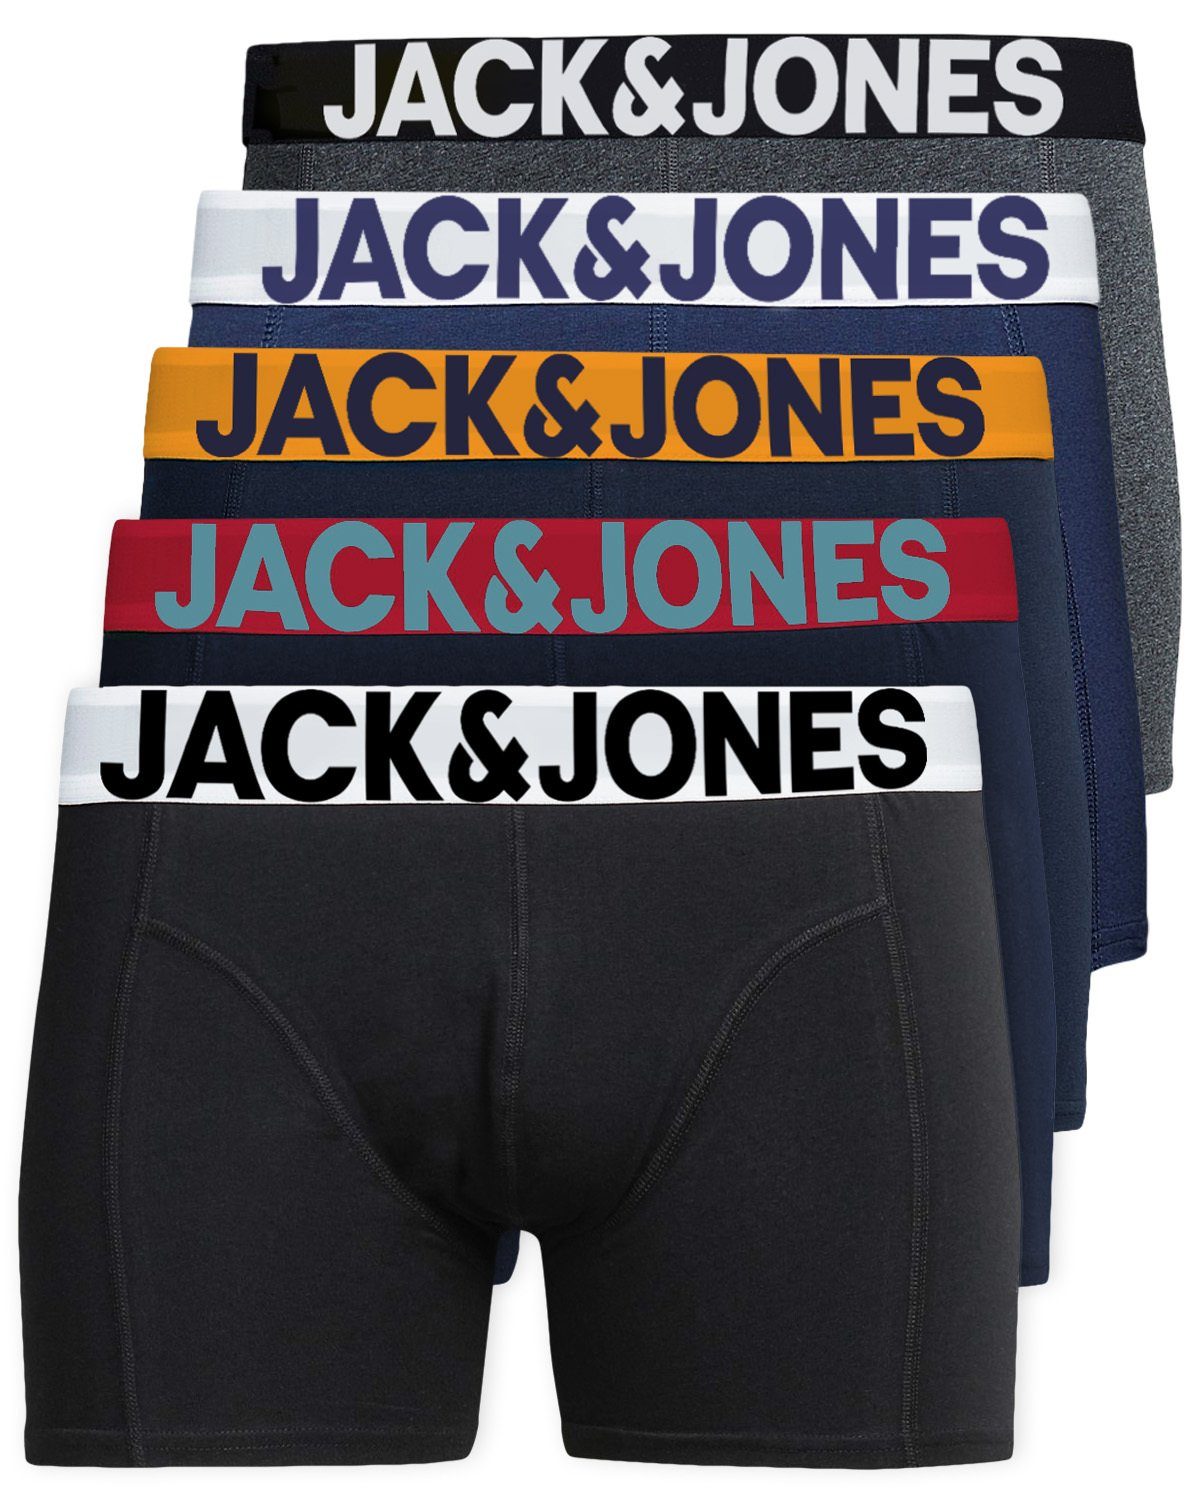 Jack & Jones Boxershorts Solid (5-St., 5er Pack) gute Passform durch elastische Baumwollqualität Mix 5